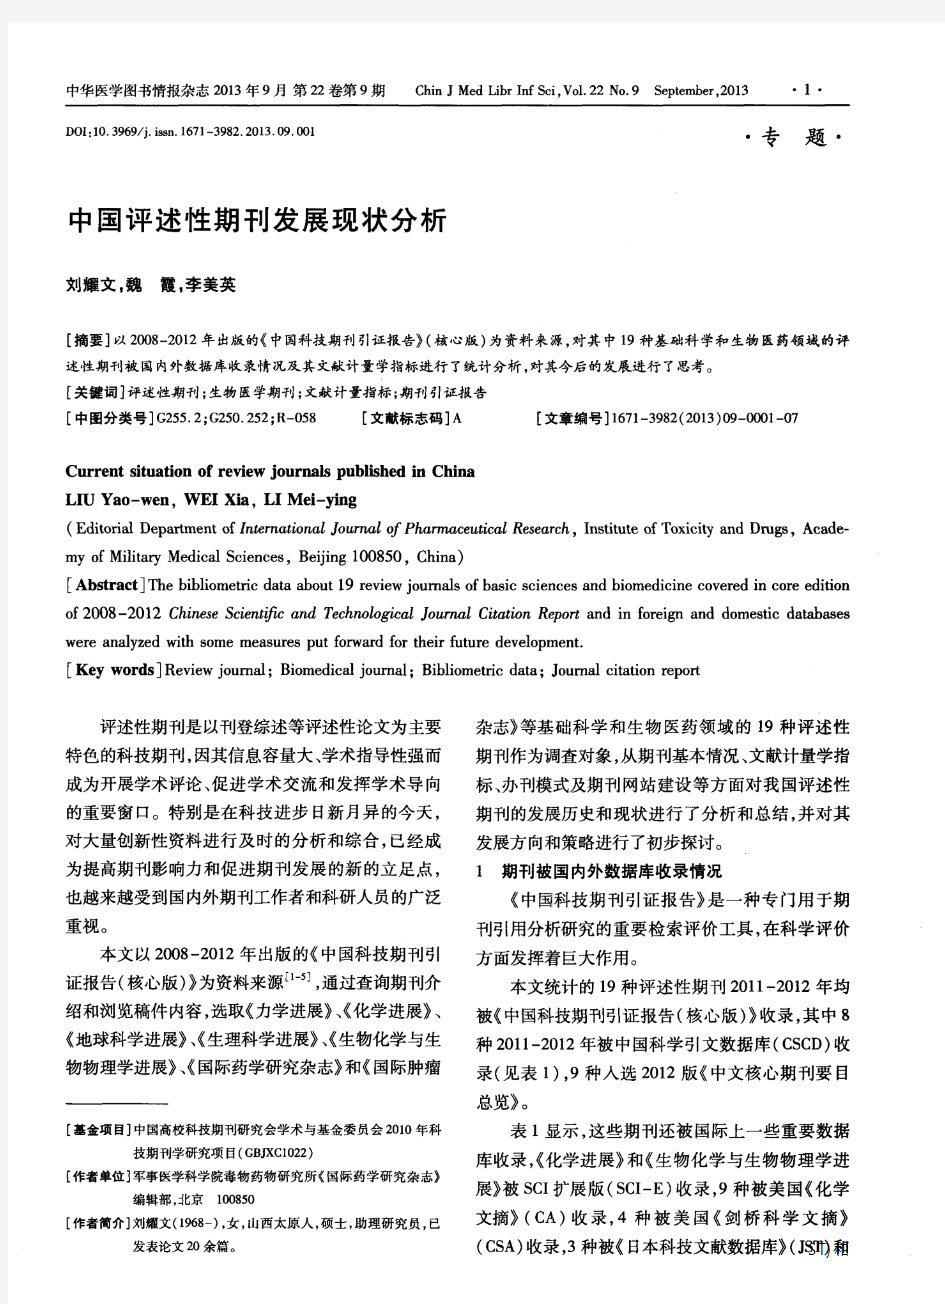 中国评述性期刊发展现状分析